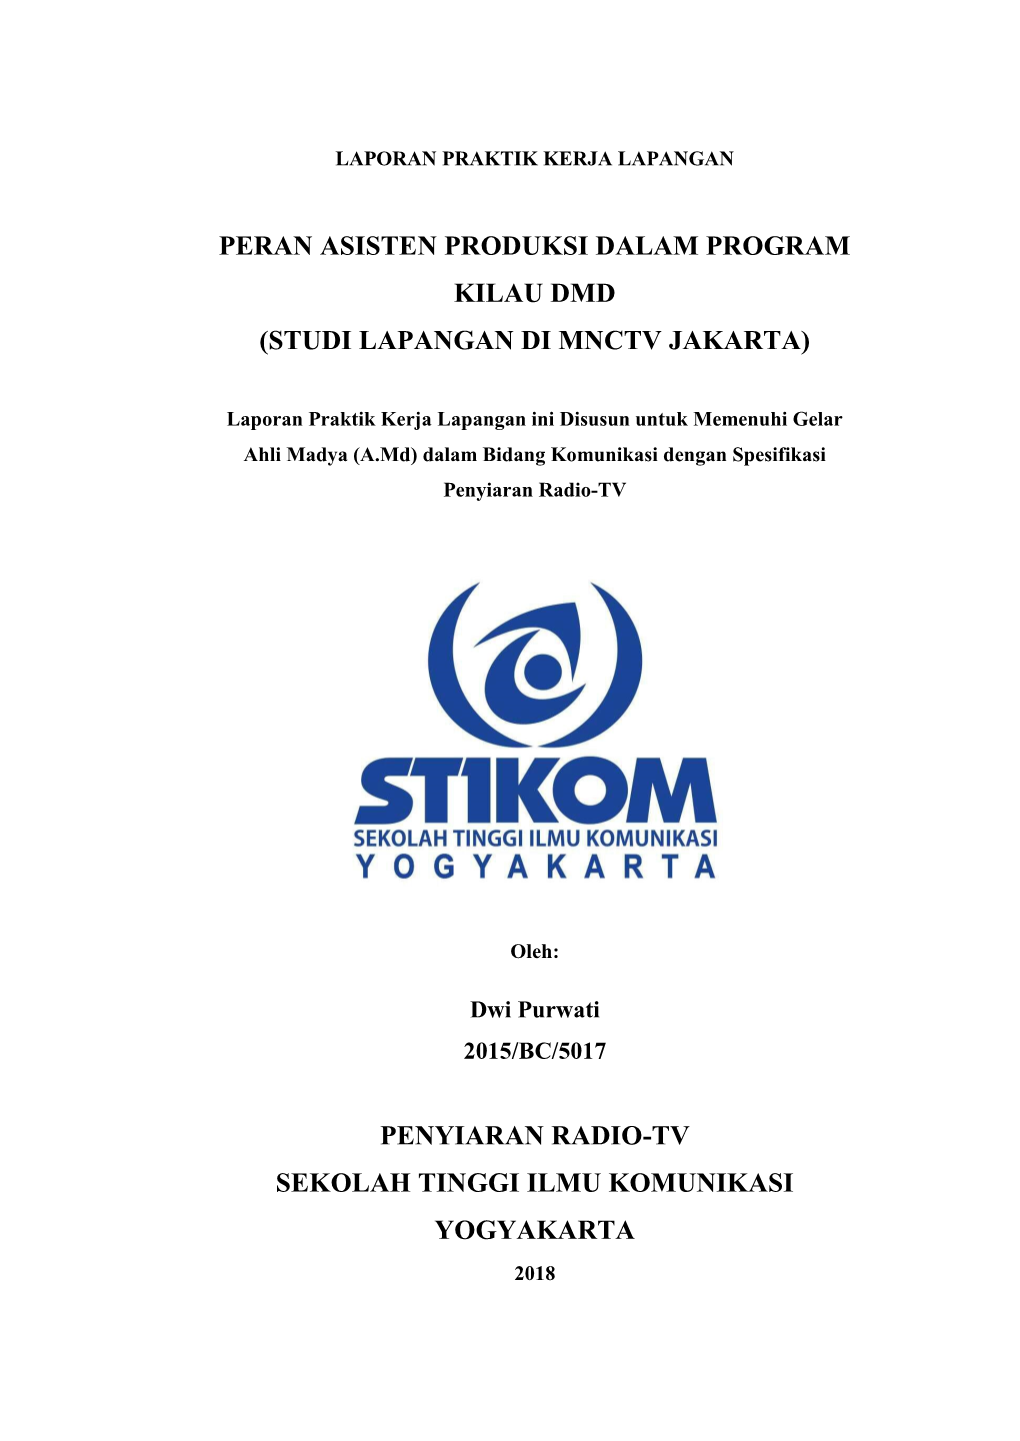 Peran Asisten Produksi Dalam Program Kilau Dmd (Studi Lapangan Di Mnctv Jakarta)